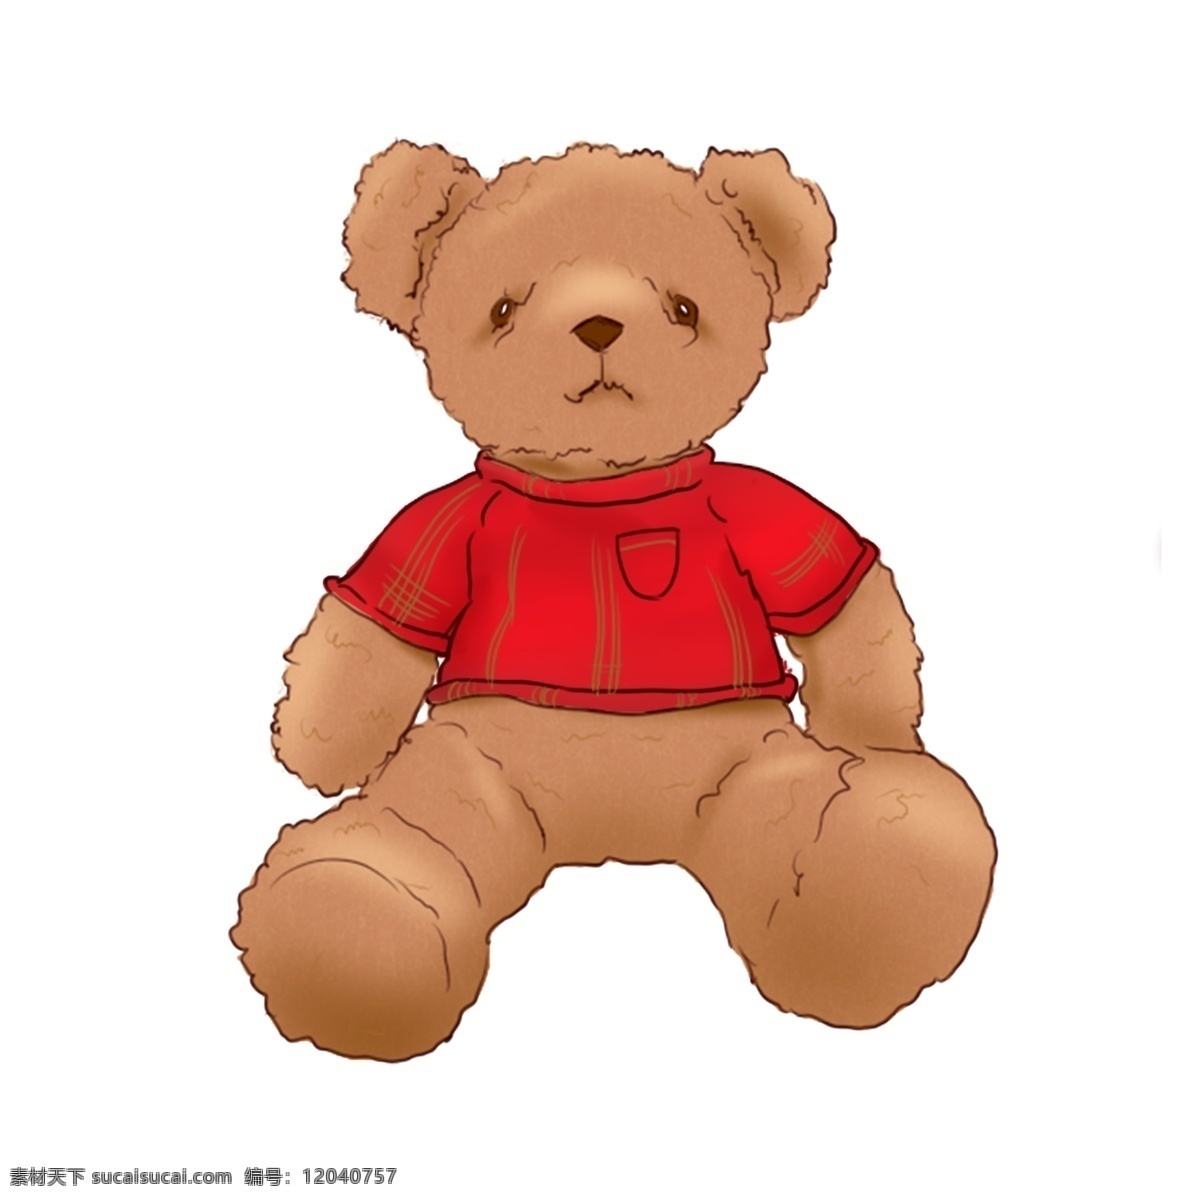 儿童玩具 泰迪 熊 毛绒玩具 配 图 原创 元素 可爱熊 泰迪熊 可爱 配图